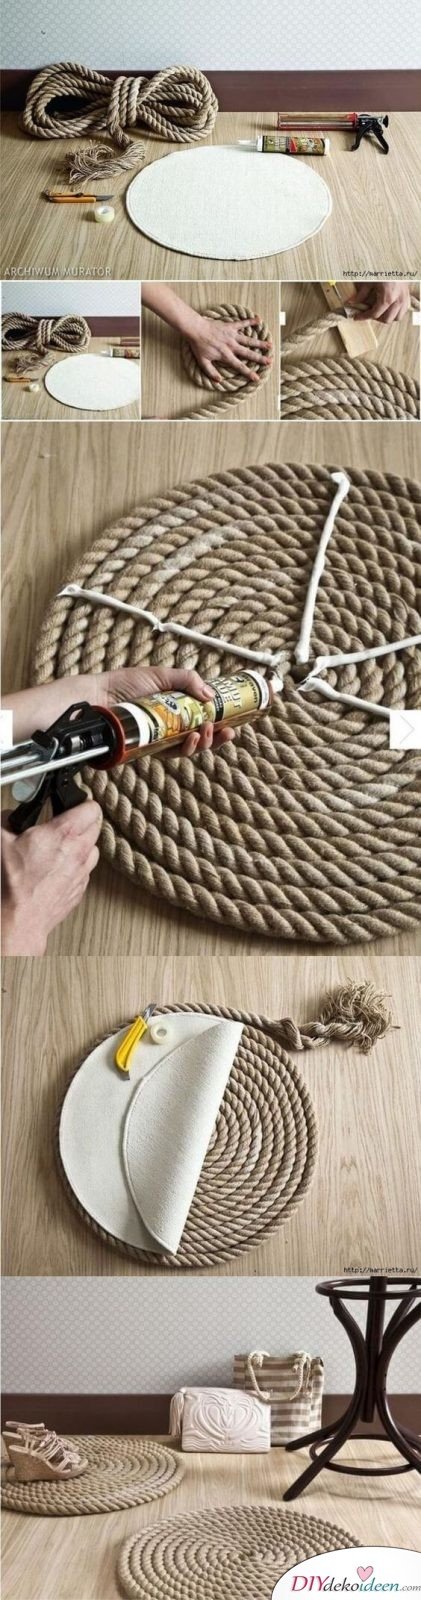 Teppich aus Schiffstau basteln - DIY Teppich